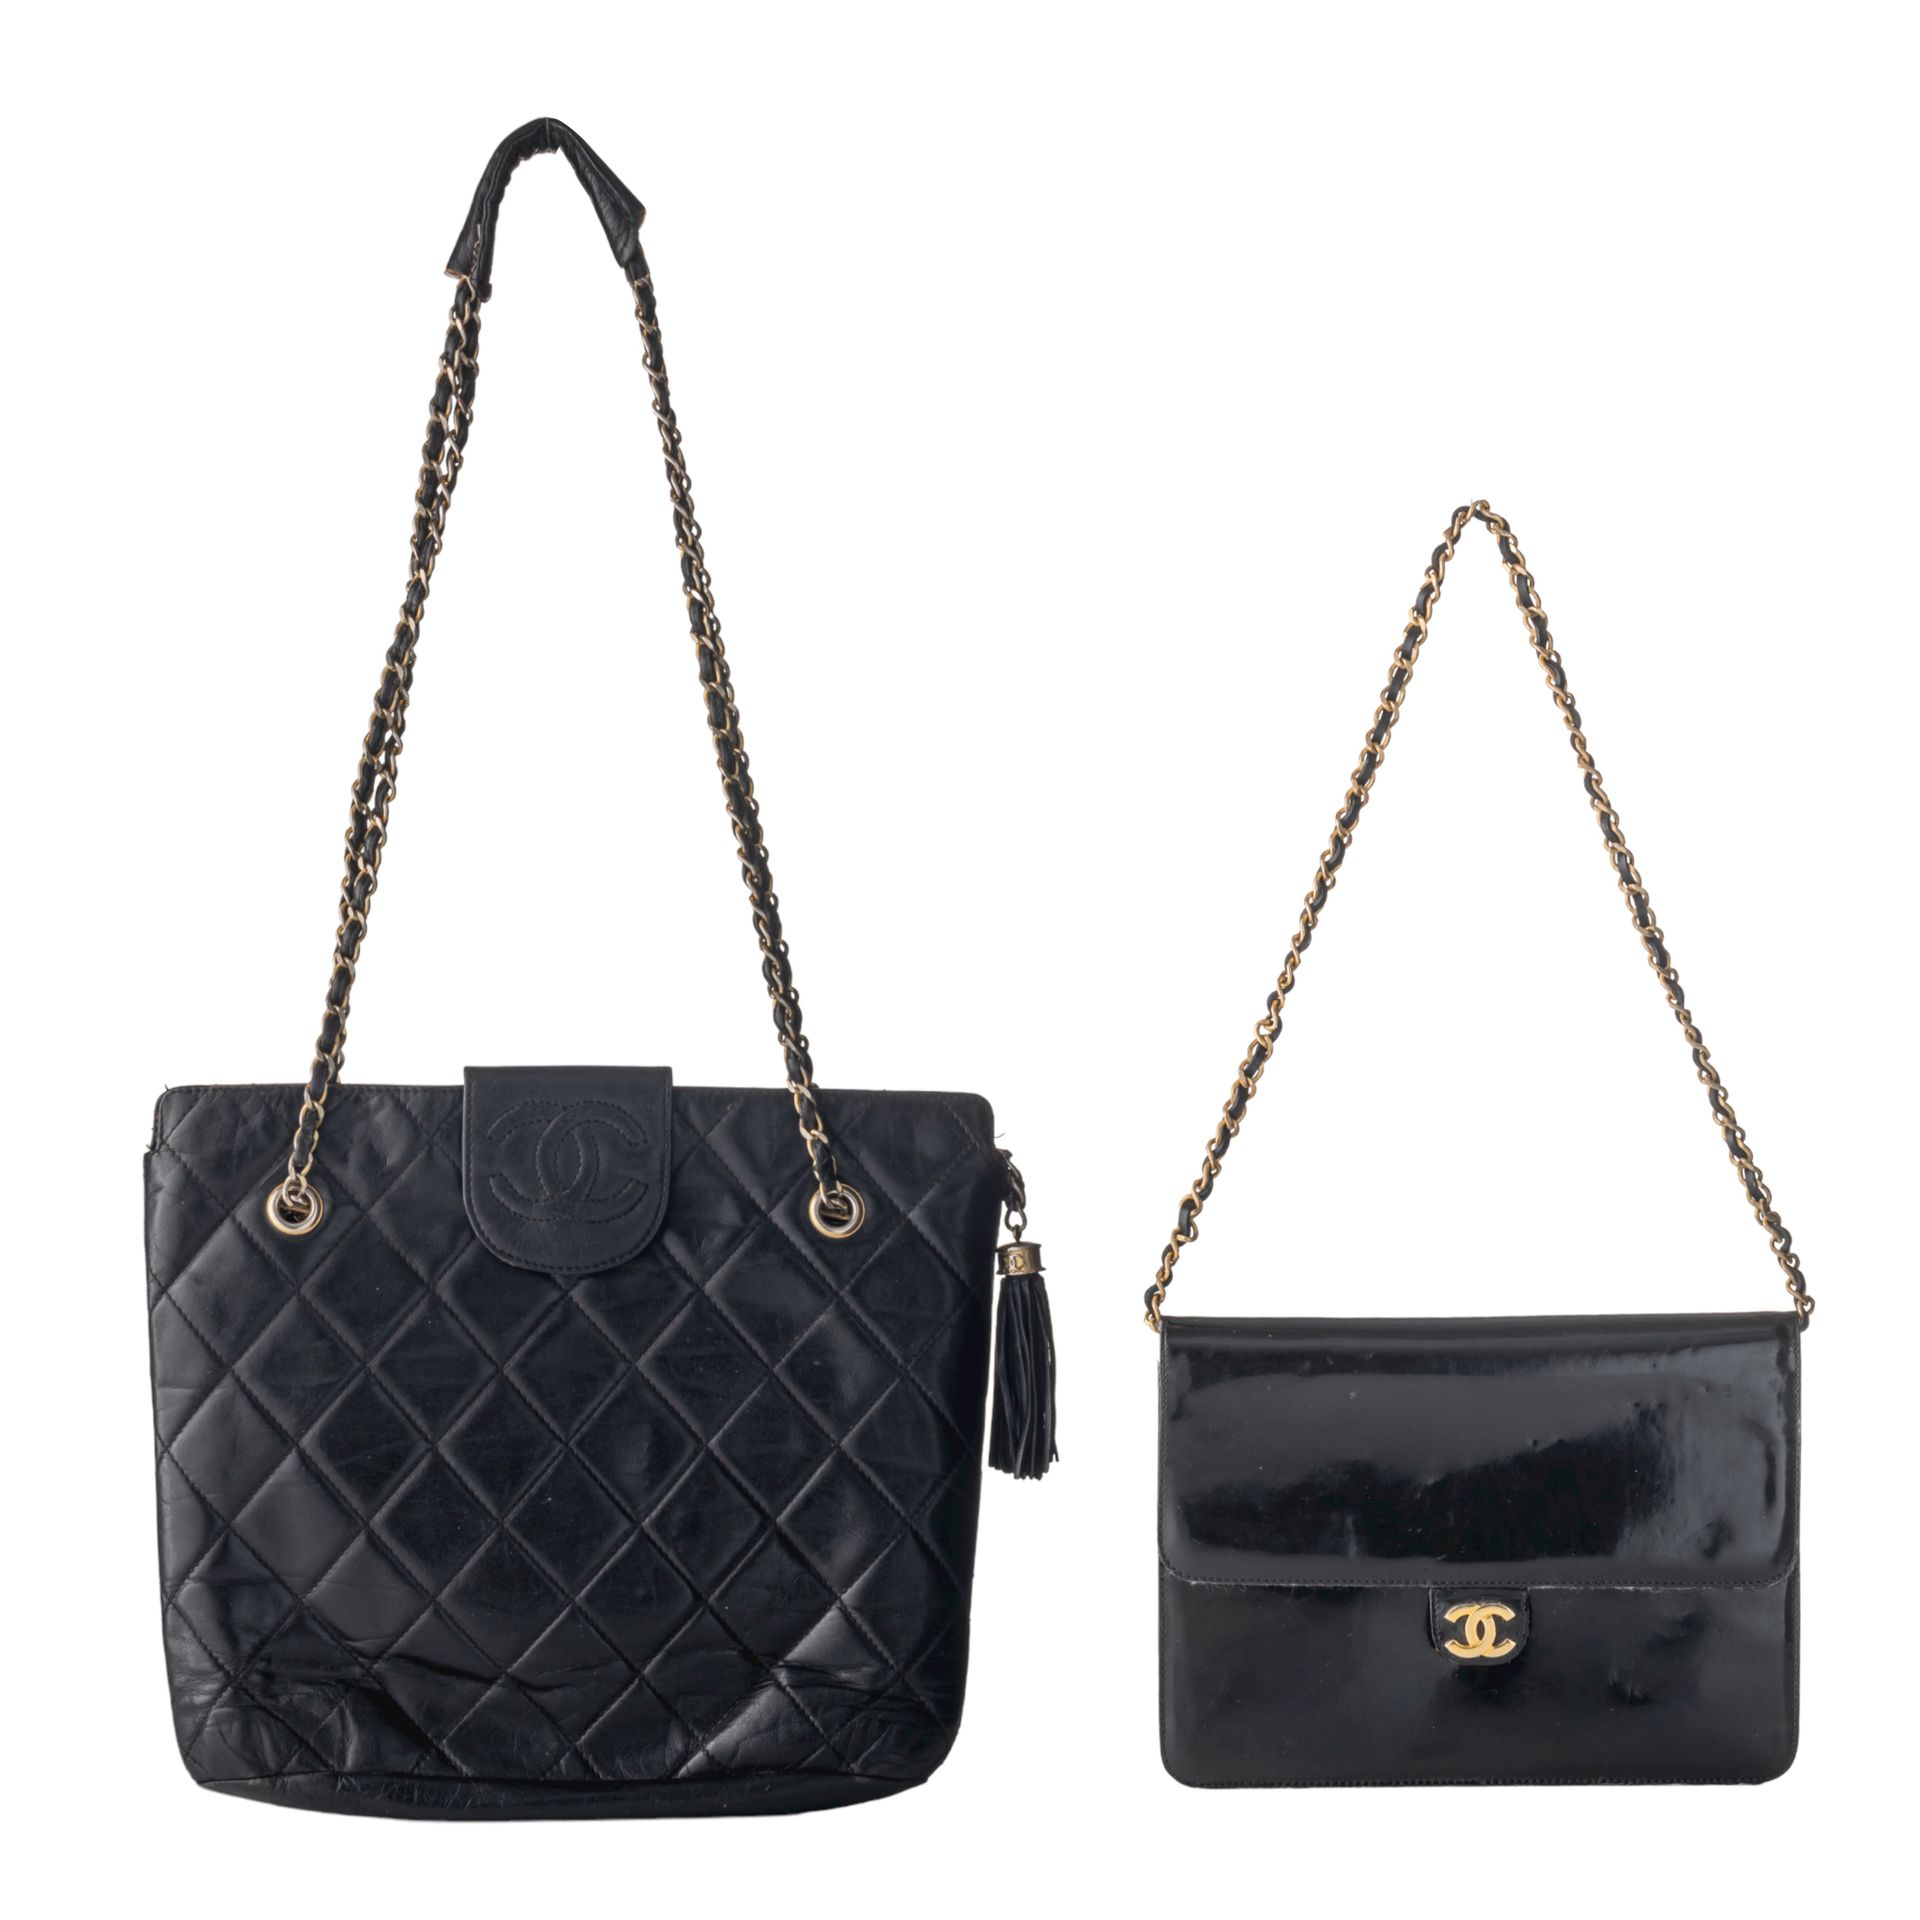 Two vintage Chanel black leather handbags, H 18,5 x 25 cm / H 27 x 30 cm Deux sa&hellip;